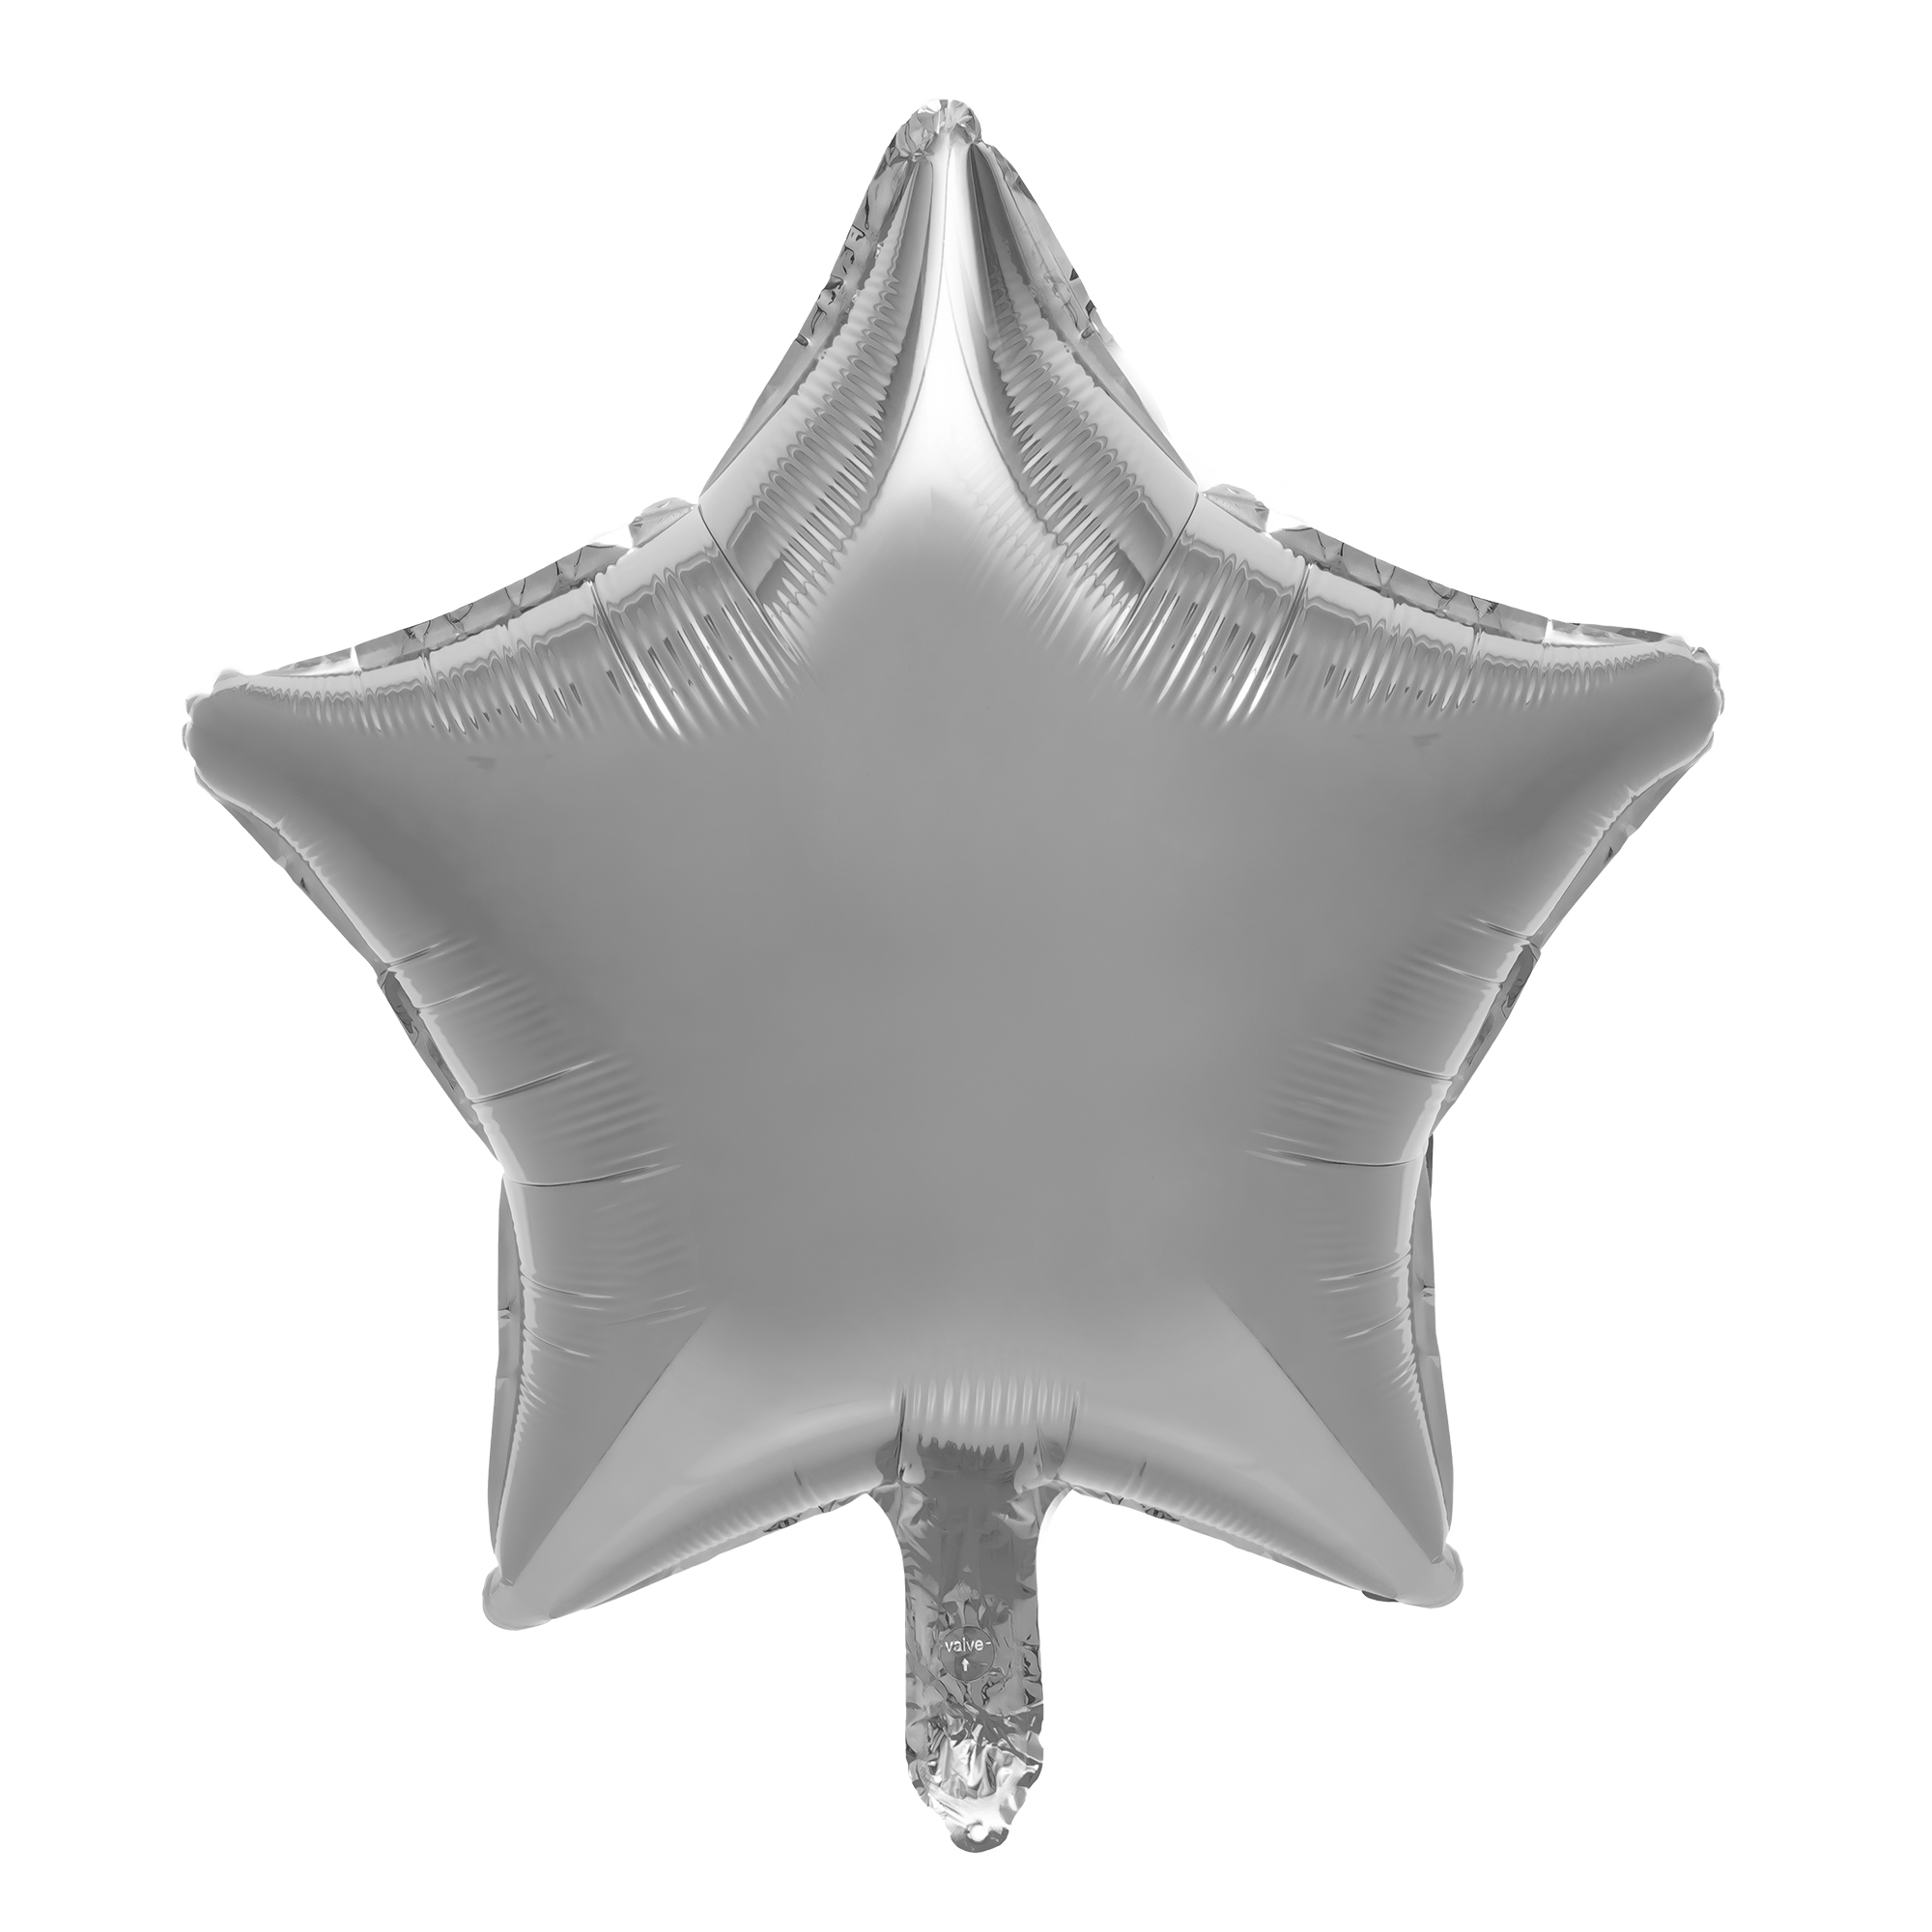 18" Star Mylar Balloon 1pc/bag - Silver